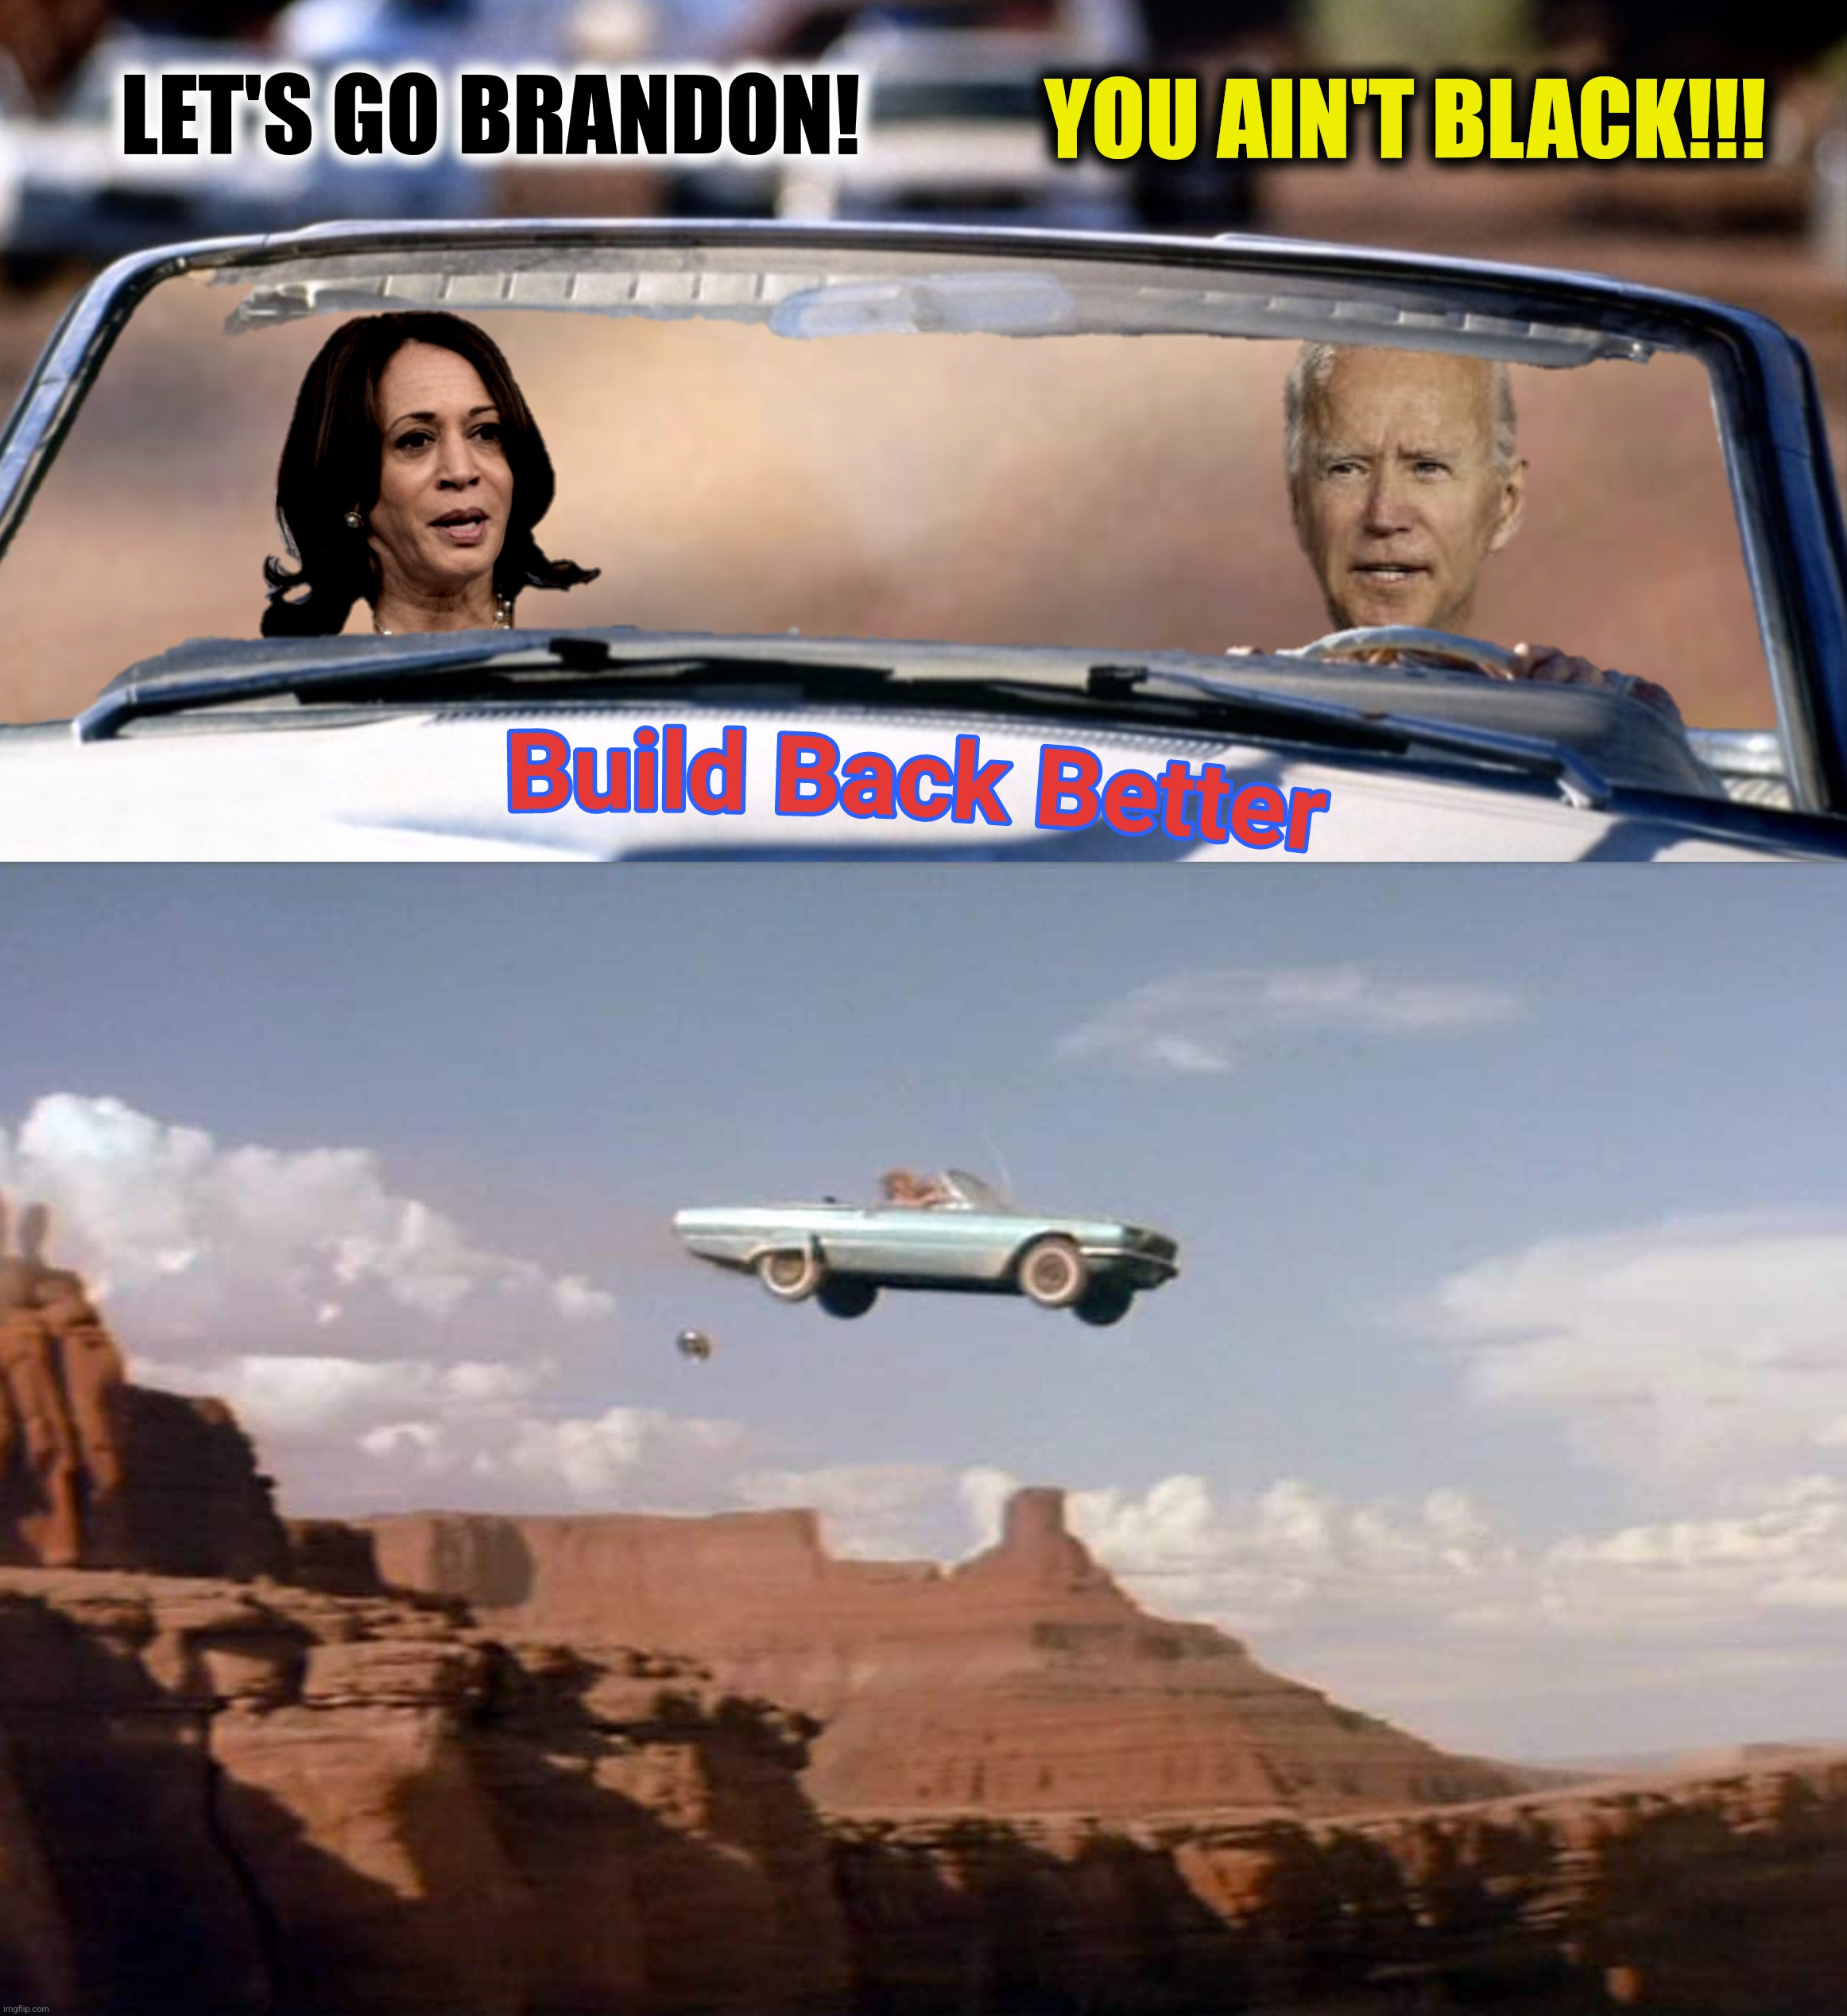 LET'S GO BRANDON! YOU AIN'T BLACK!!! | made w/ Imgflip meme maker